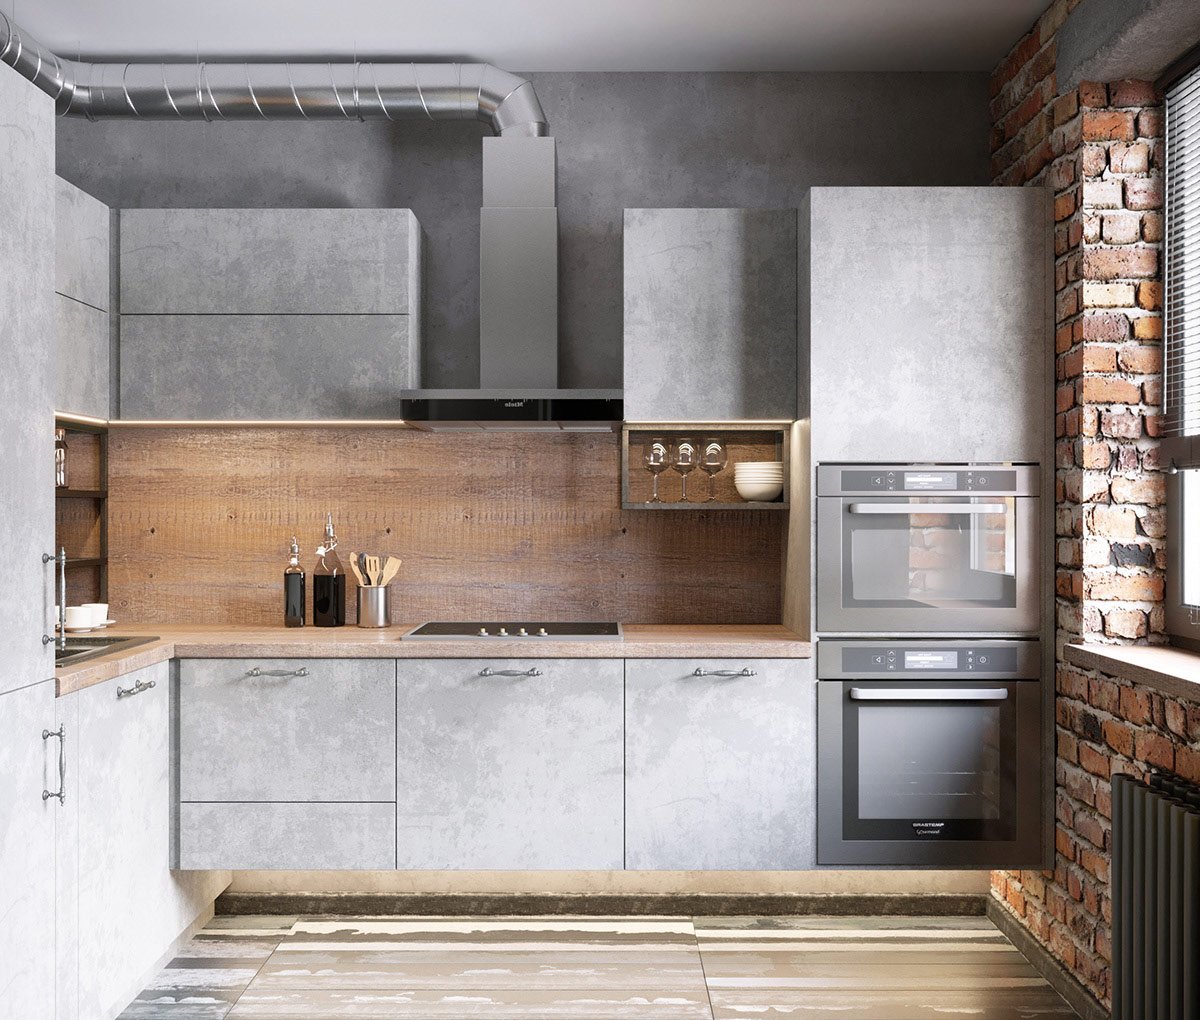 Кухня в стиле лофт – фото дизайна интерьеров кухонь в лофт-квартире